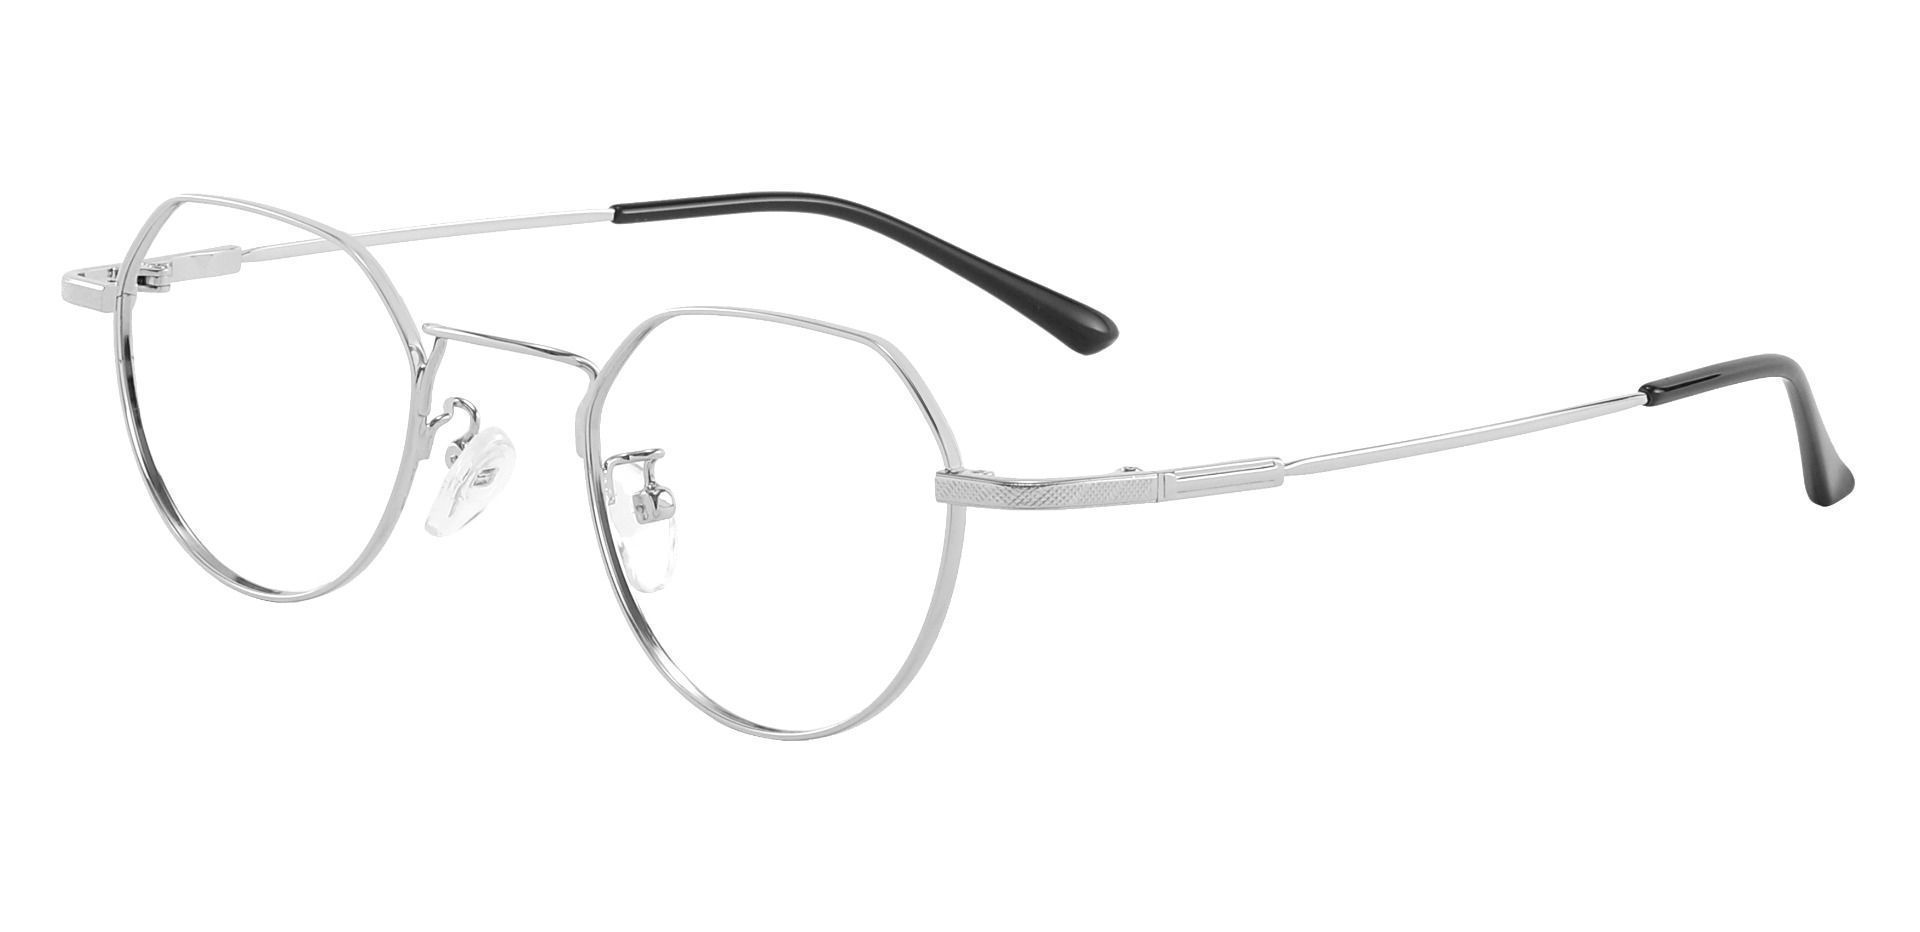 Douglas Geometric Prescription Glasses - Silver